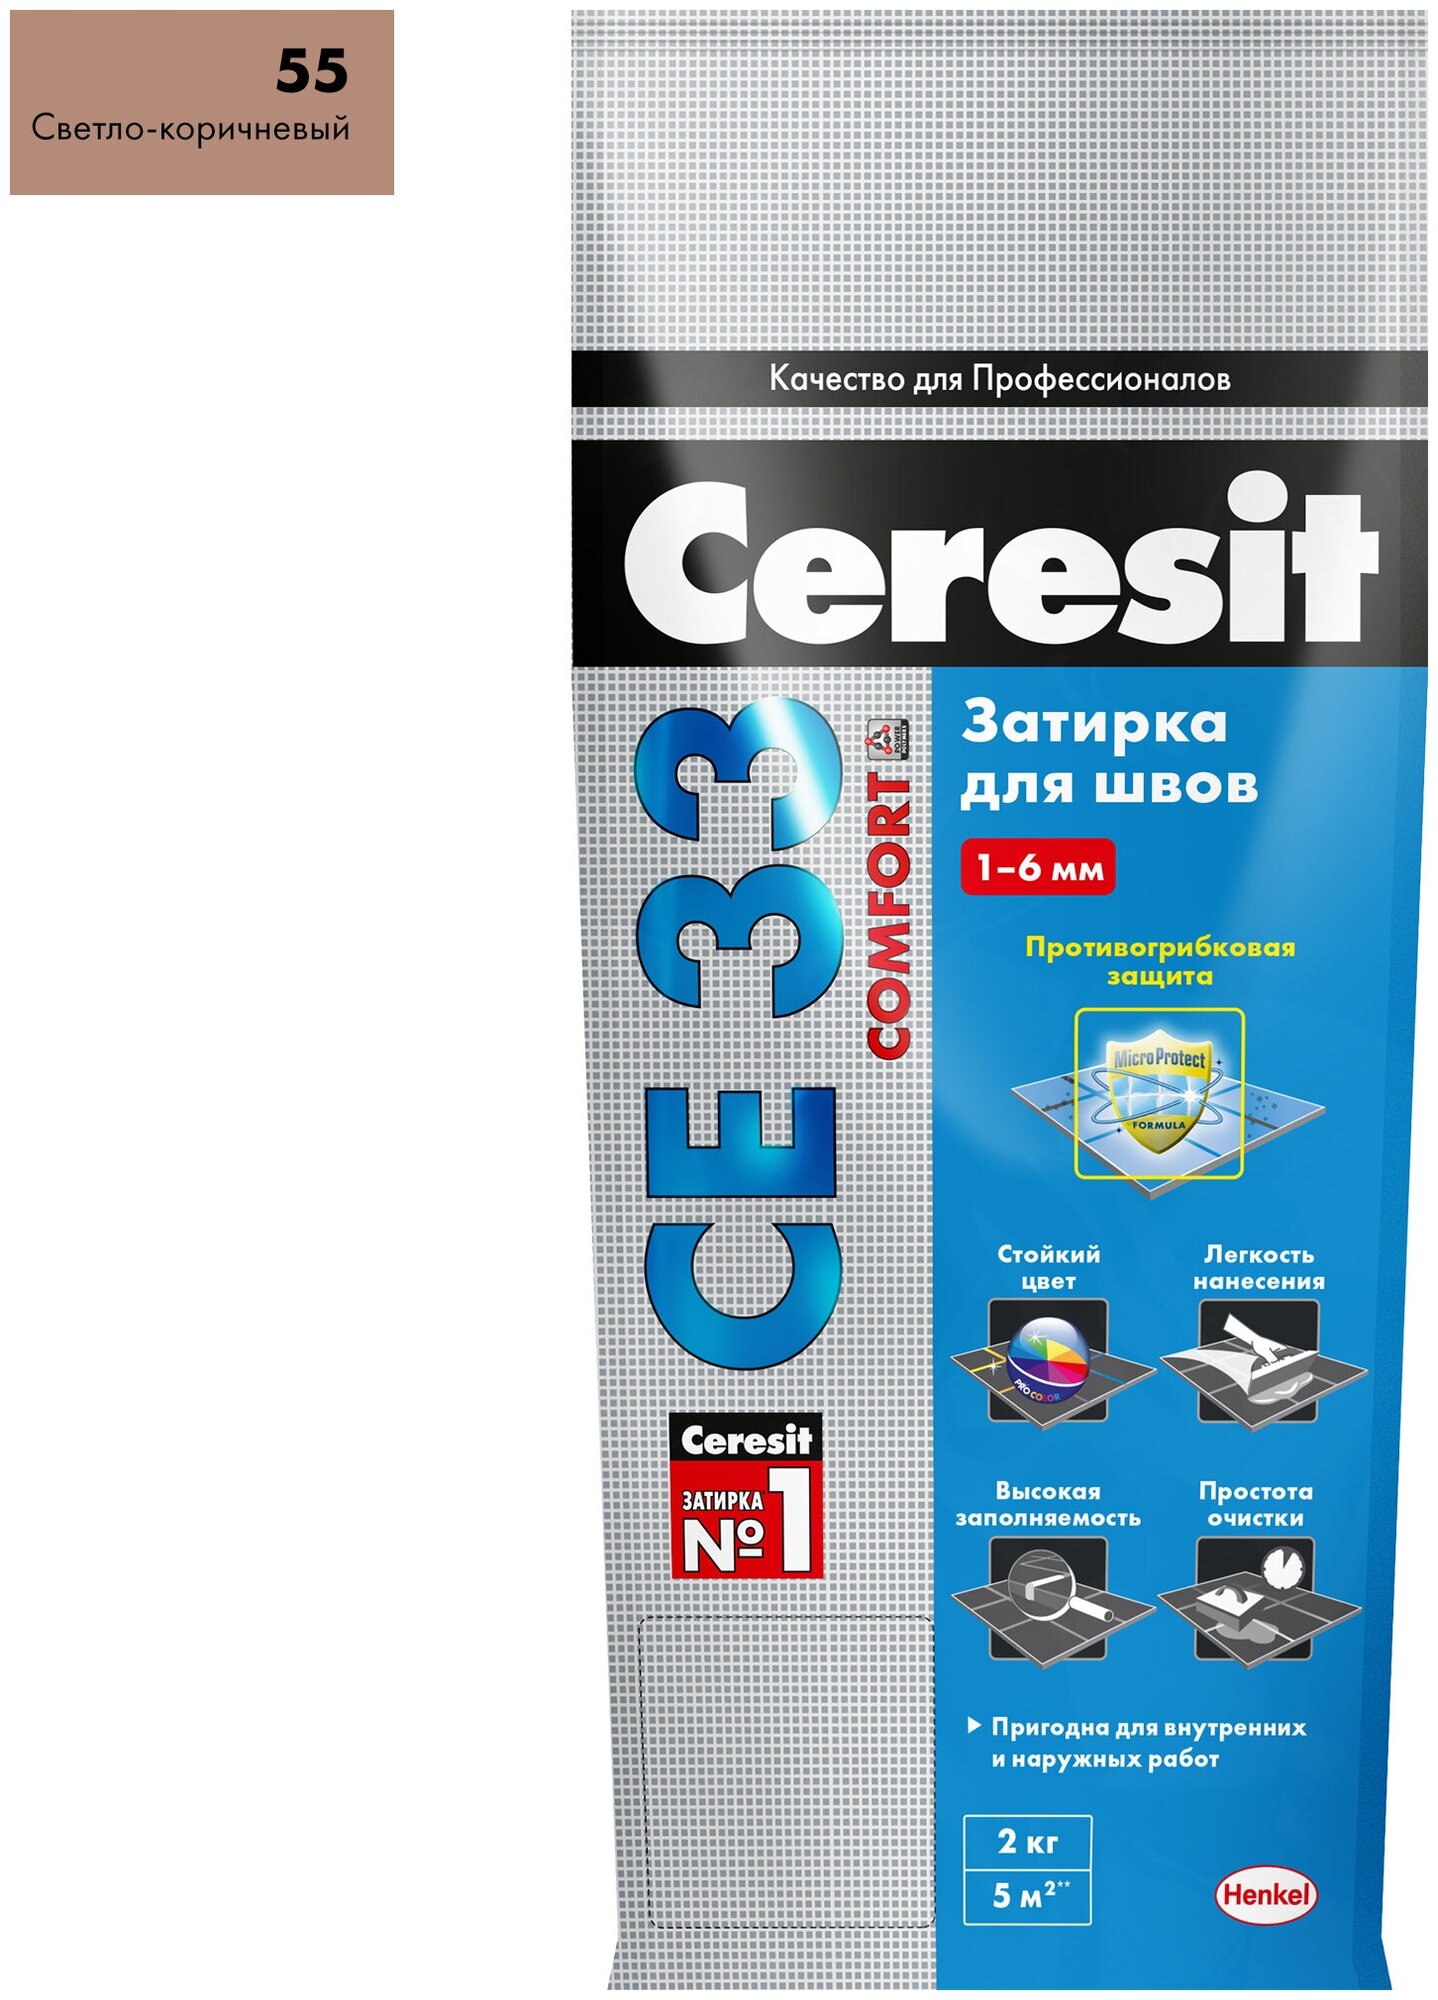 Затирка для узких швов Ceresit CE 33 2кг, 55-светло-коричневый - фотография № 2